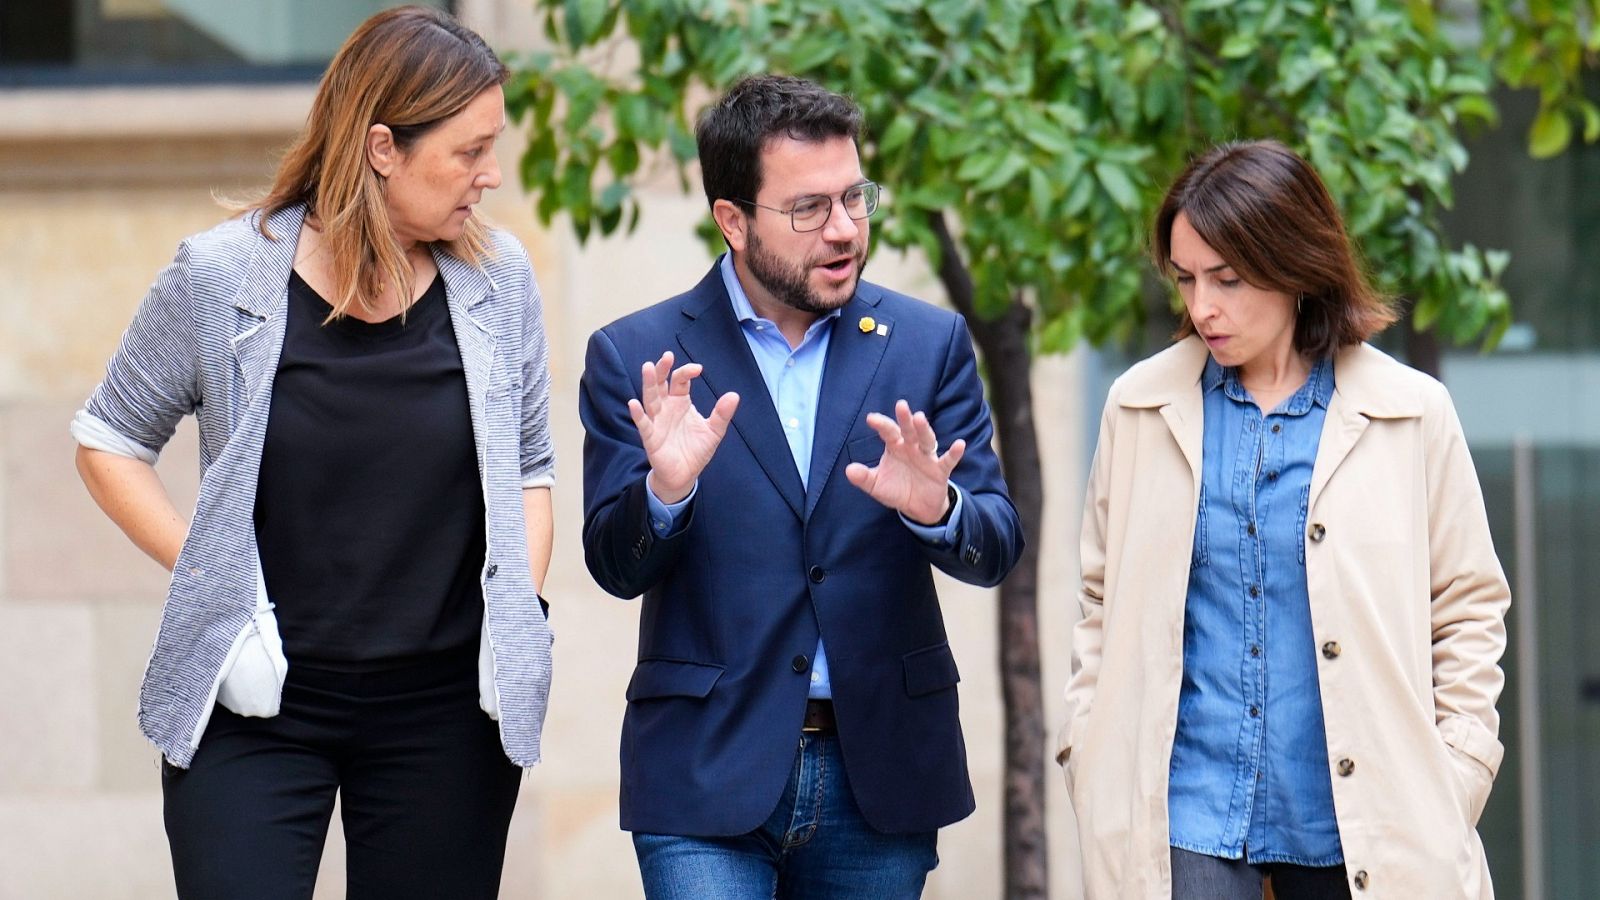 Aragonés abre la puerta del Govern a independientes de distintas sensibilidades